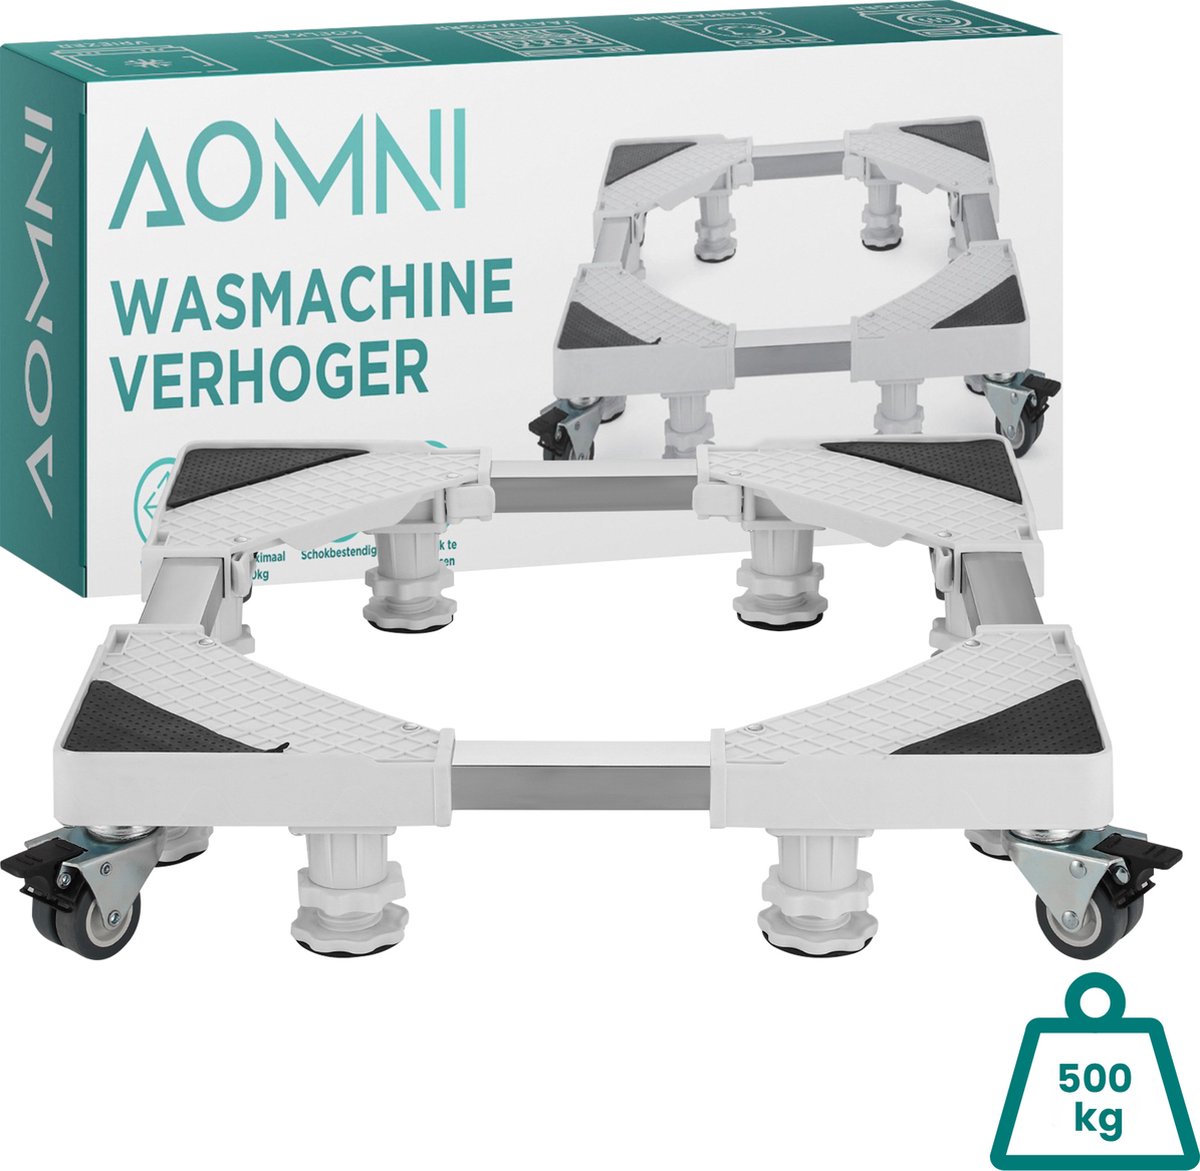 Aomni Wasmachine Verhoger voor Droger & Koelkast - Meubelroller met 500 KG Draagkracht - Trolley - 4 Wielen - Aomni